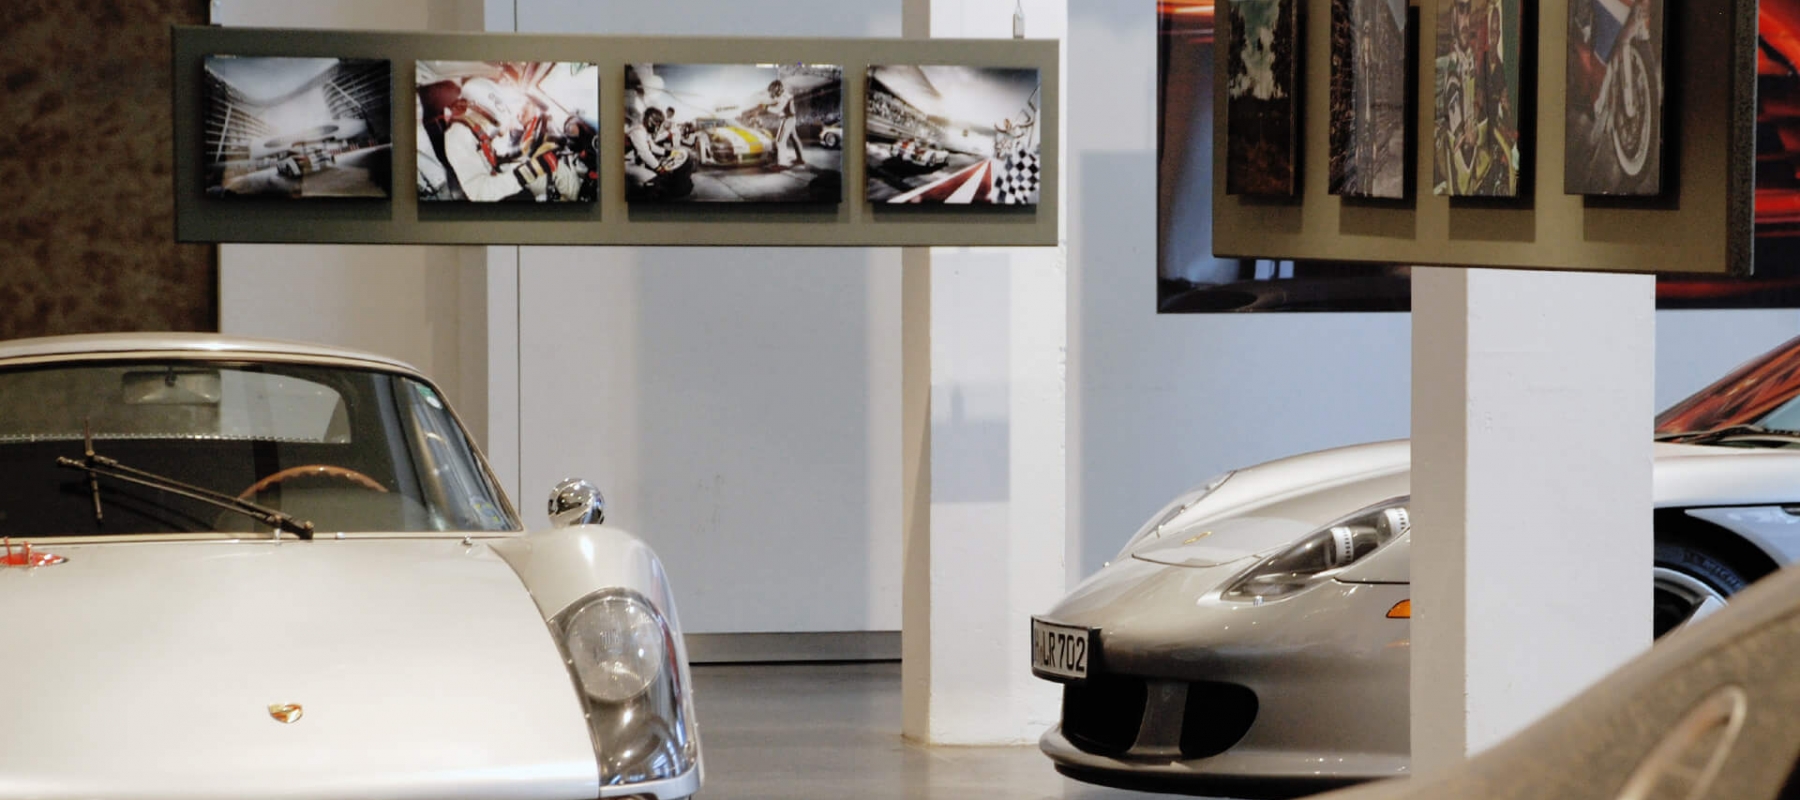 Bei dieser Sonderausstellung zeigte 2013 das Hamburger Automuseum Prototyp großformatige Fotografien des bekannten Automobilfotografen Frank Kayser. Passend zum Titel 